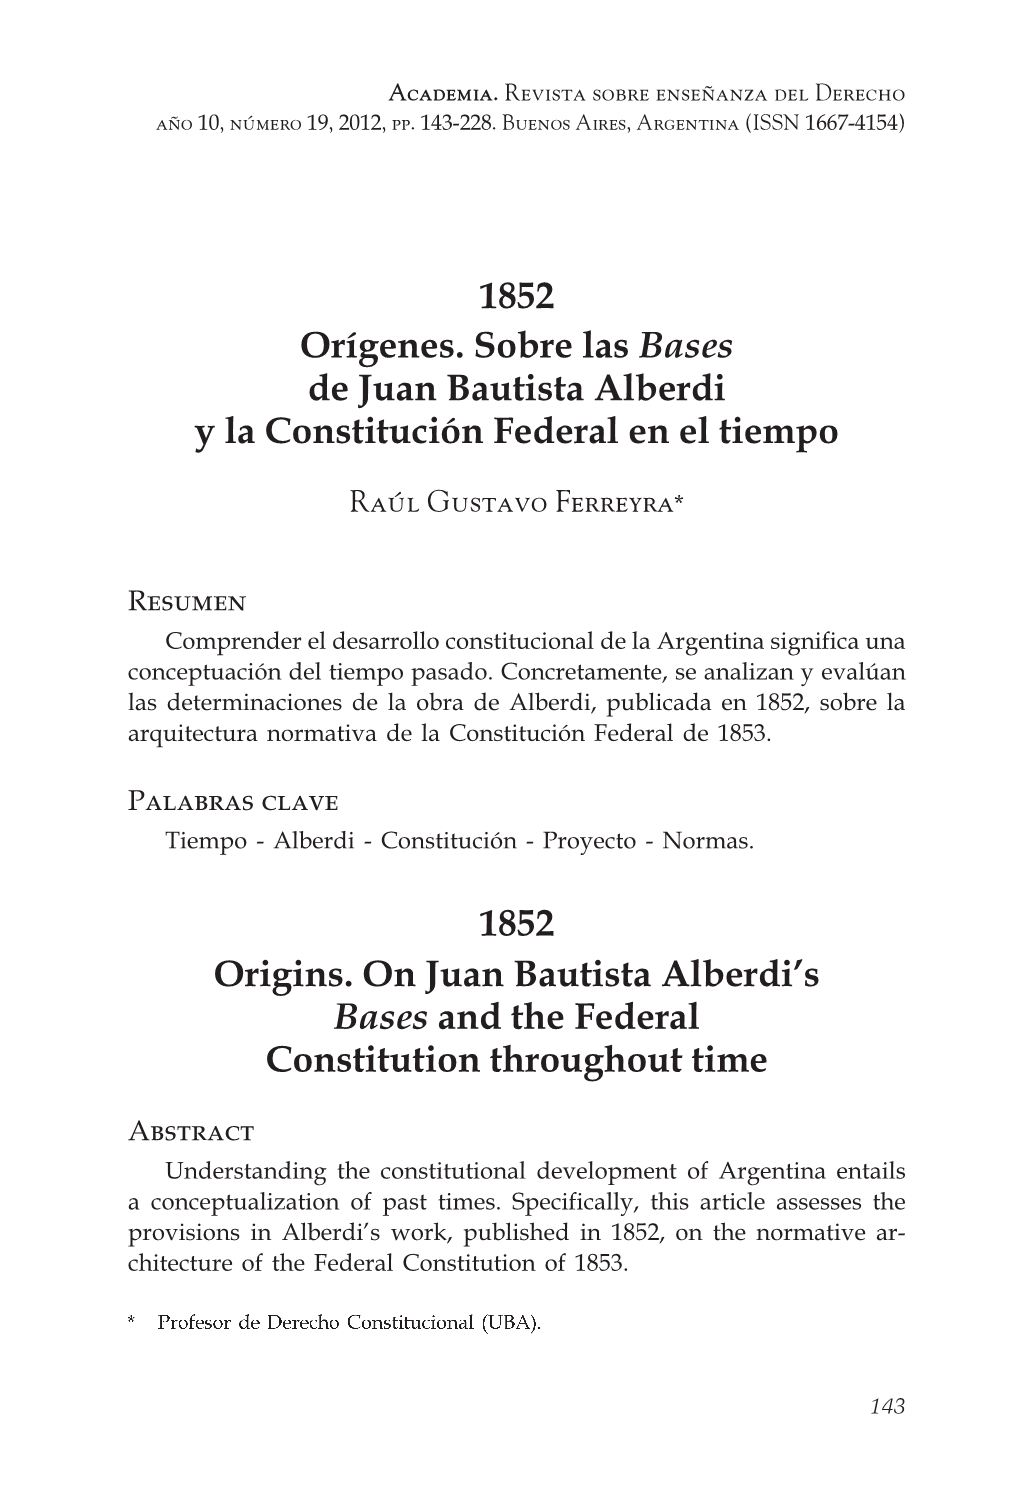 1852 Orígenes. Sobre Las Bases De Juan Bautista Alberdi Y La Constitución Federal En El Tiempo 1852 Origins. on Juan Bautista